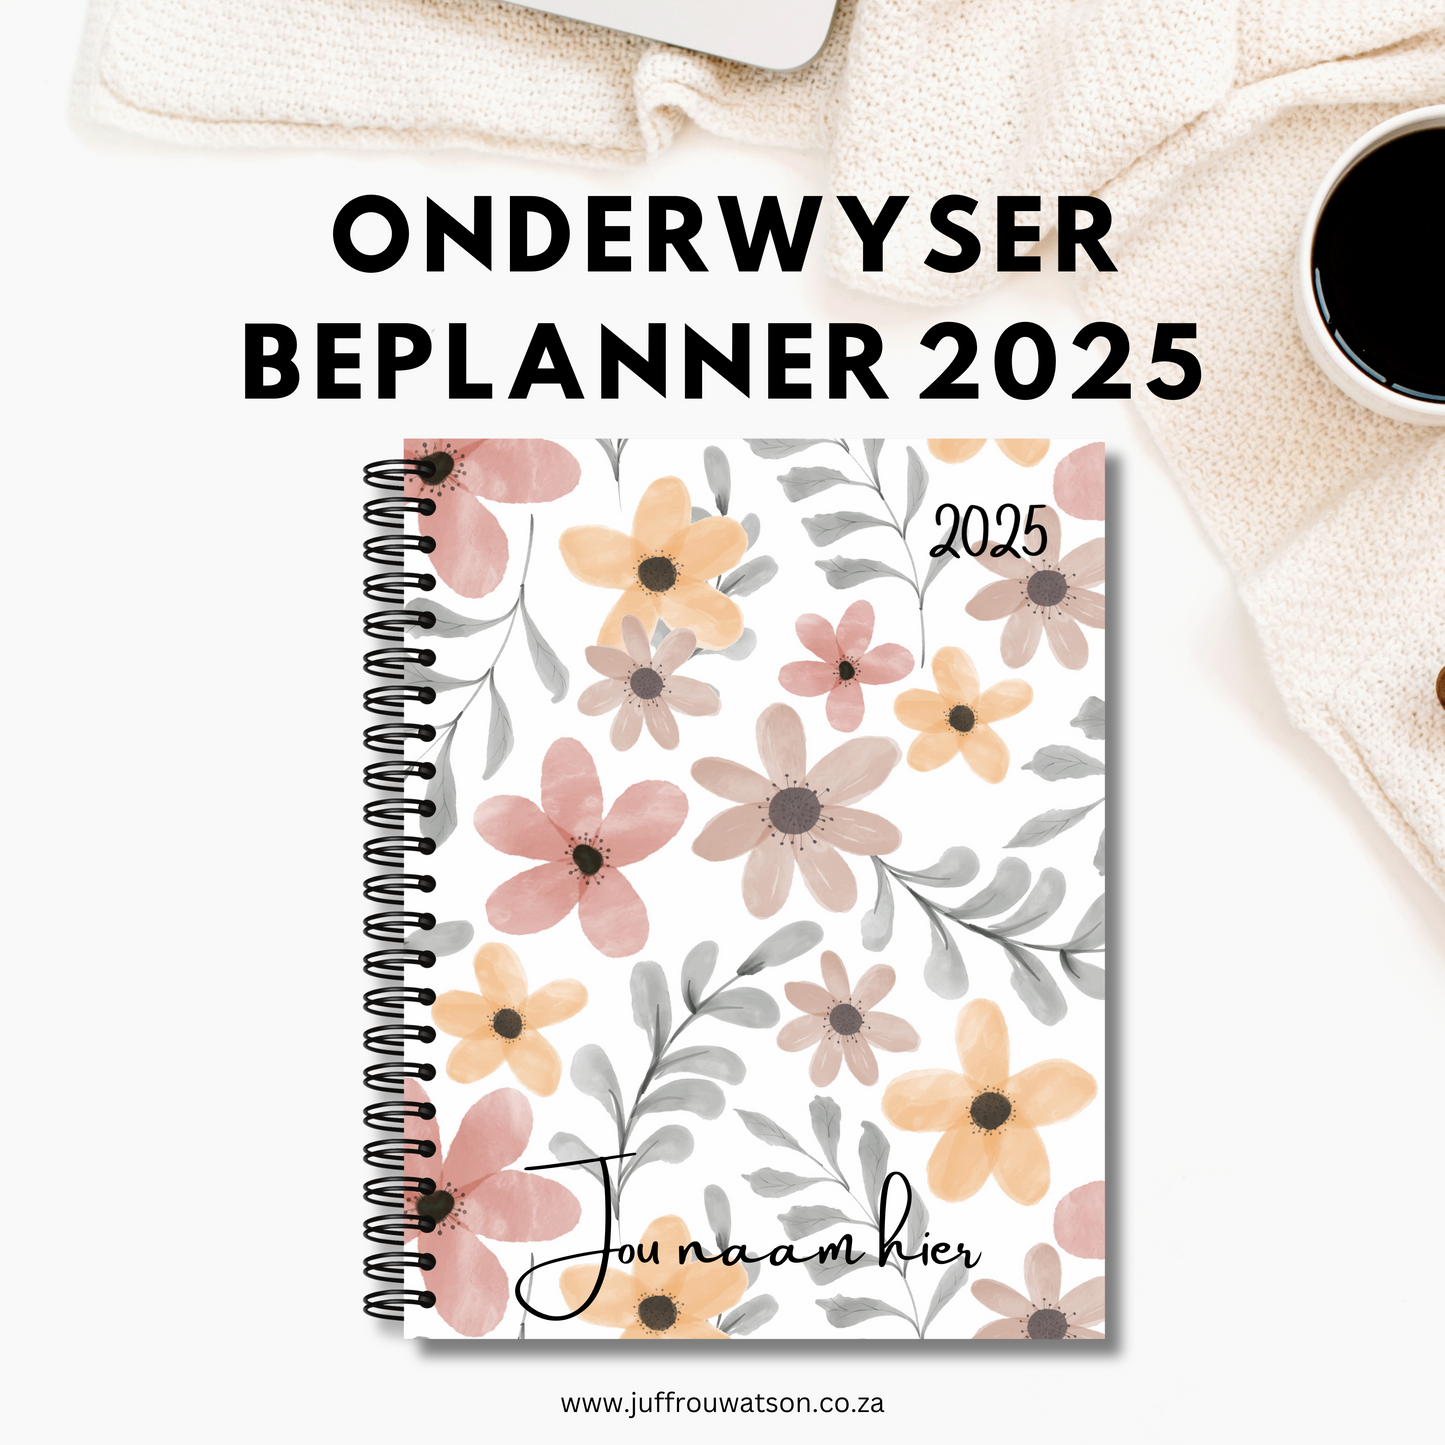 2025 Teacher Planner - Autumn